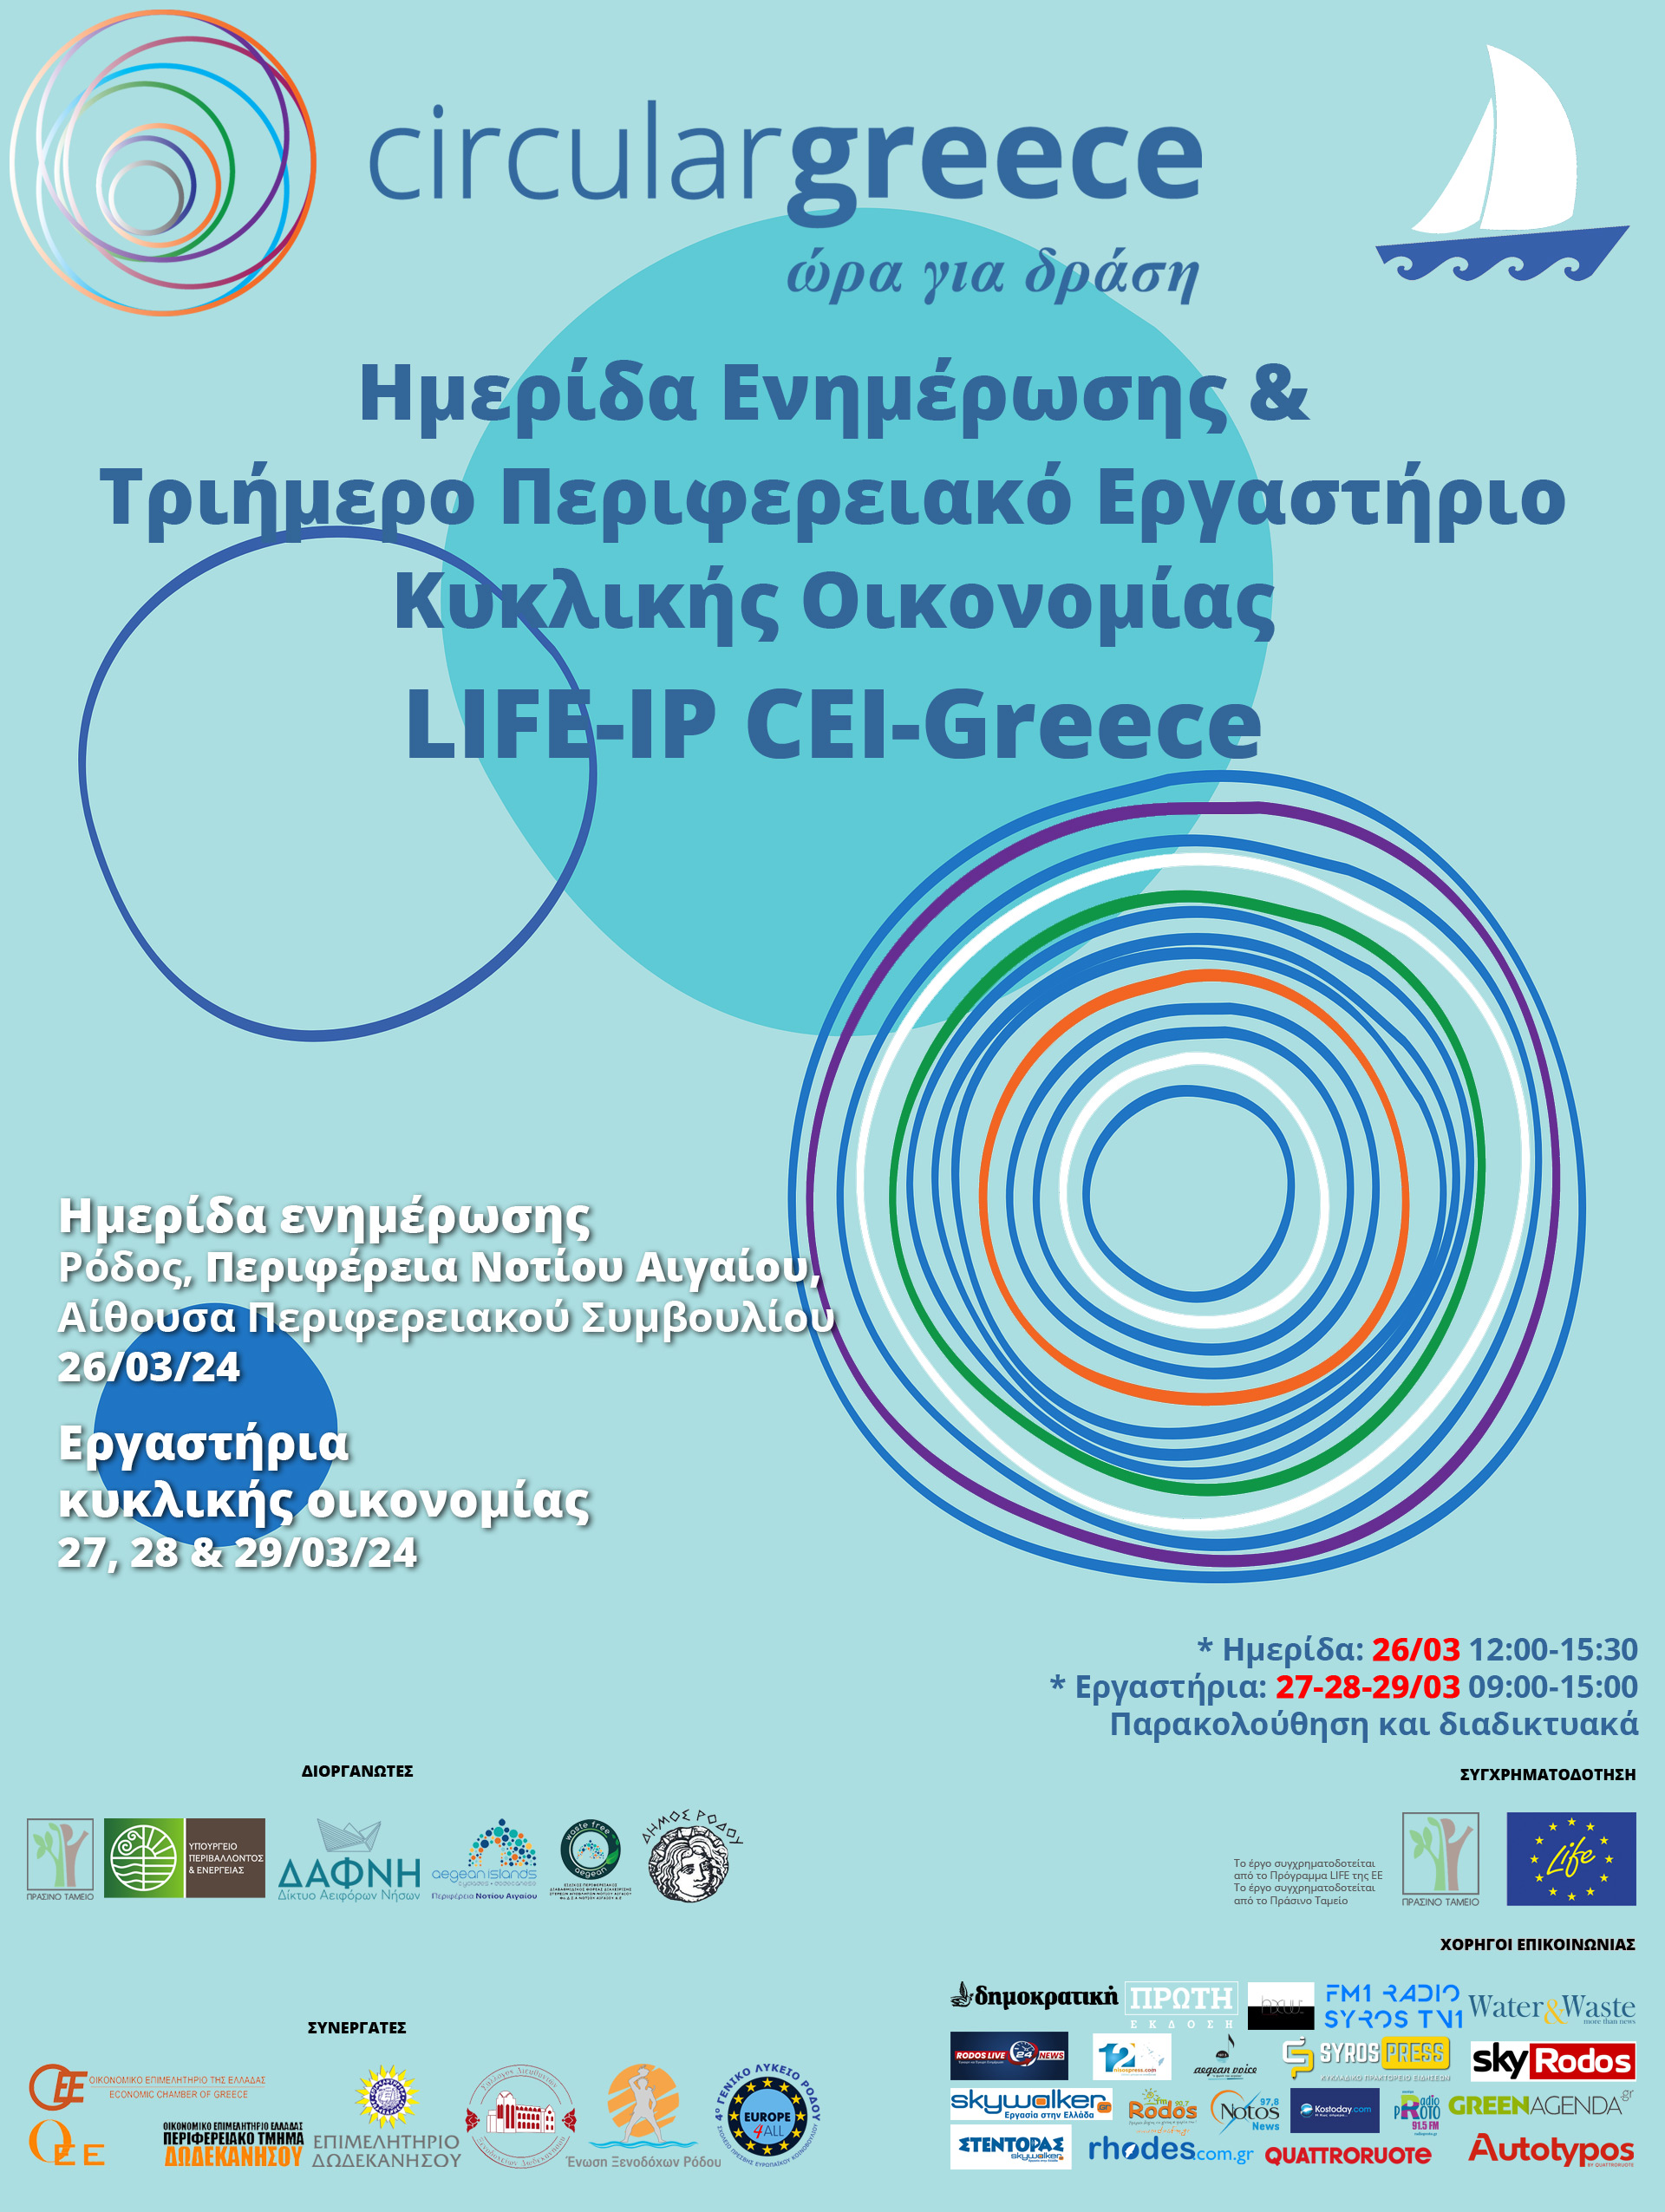 Έργο LIFE-IP CEI-Greece – Διοργάνωση Ημερίδας Ενημέρωσης & Τριήμερου Περιφερειακού Εργαστηρίου Κυκλικής Οικονομίας στο Νότιο Αιγαίο, 26-29/03/2024